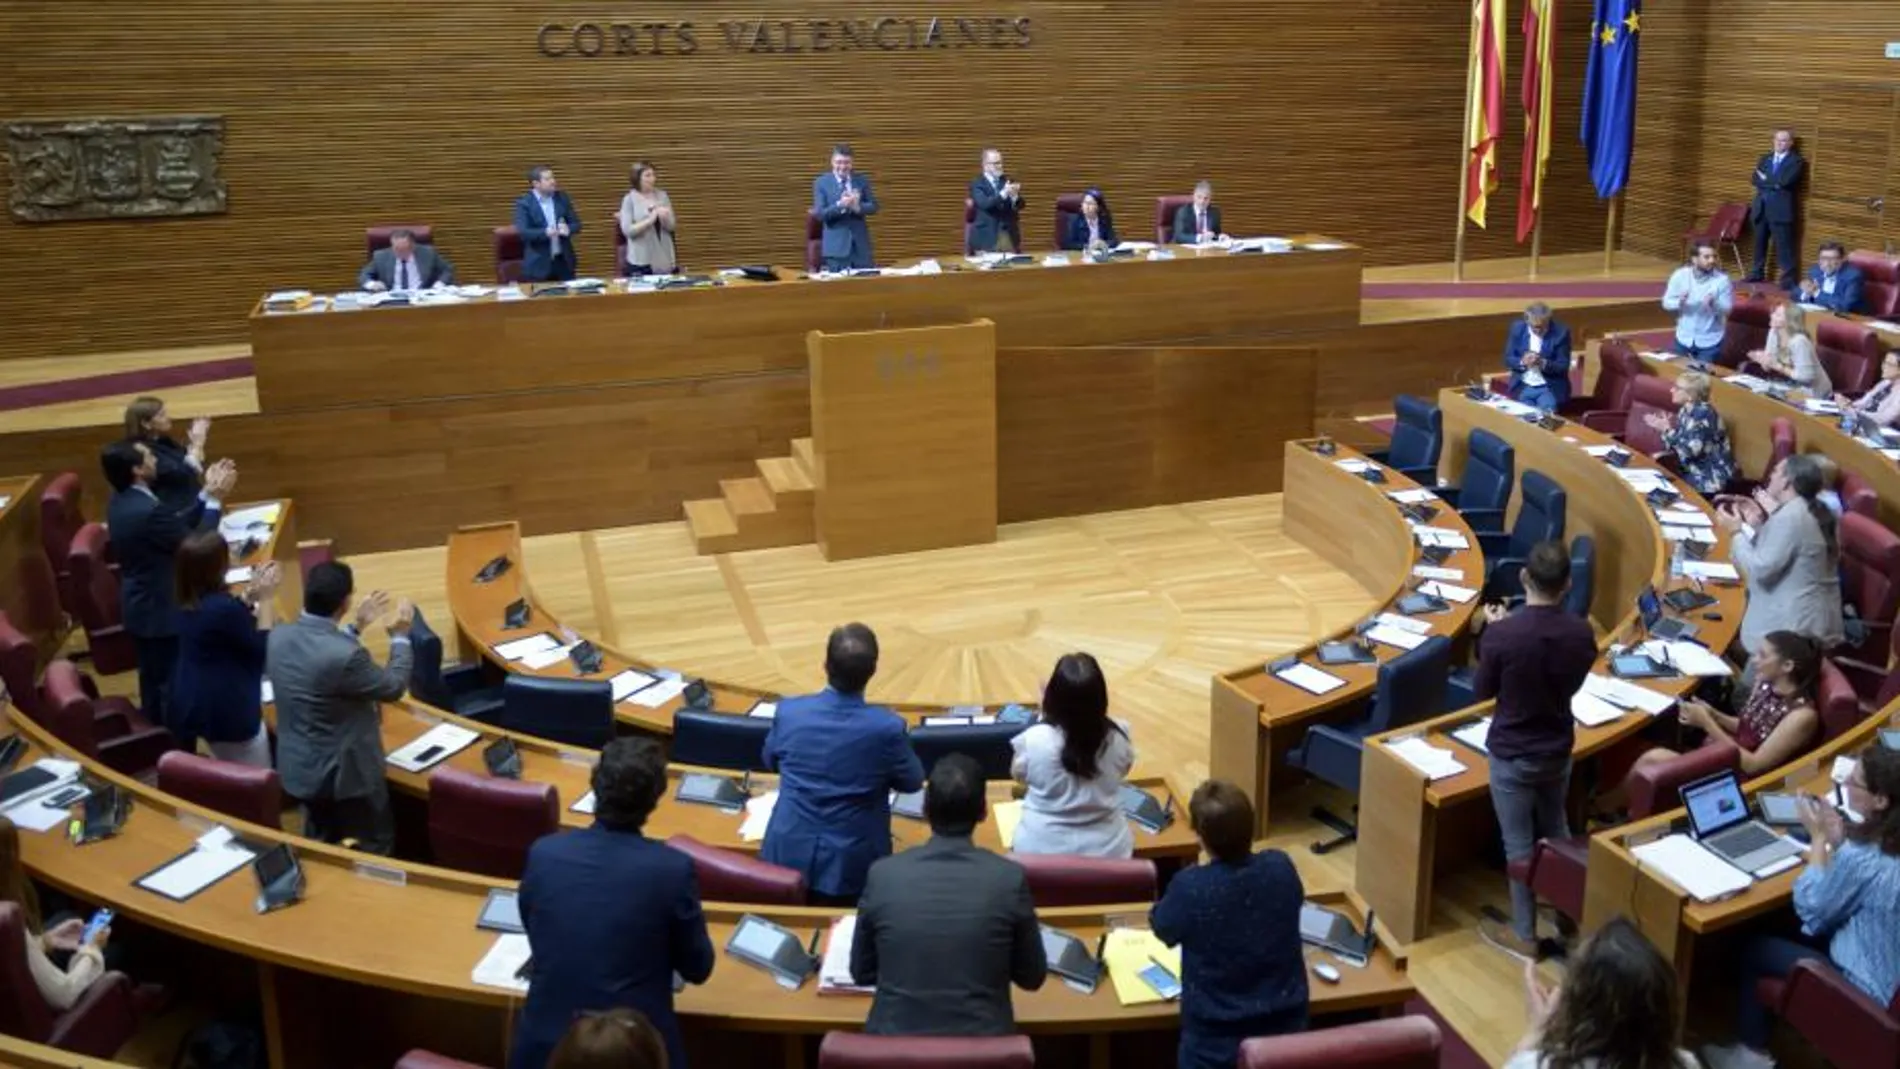 La Razón. Les Corts aprobaron por unanimidad enviar a Pedro Sánchez la denominada «Agenda valenciana»